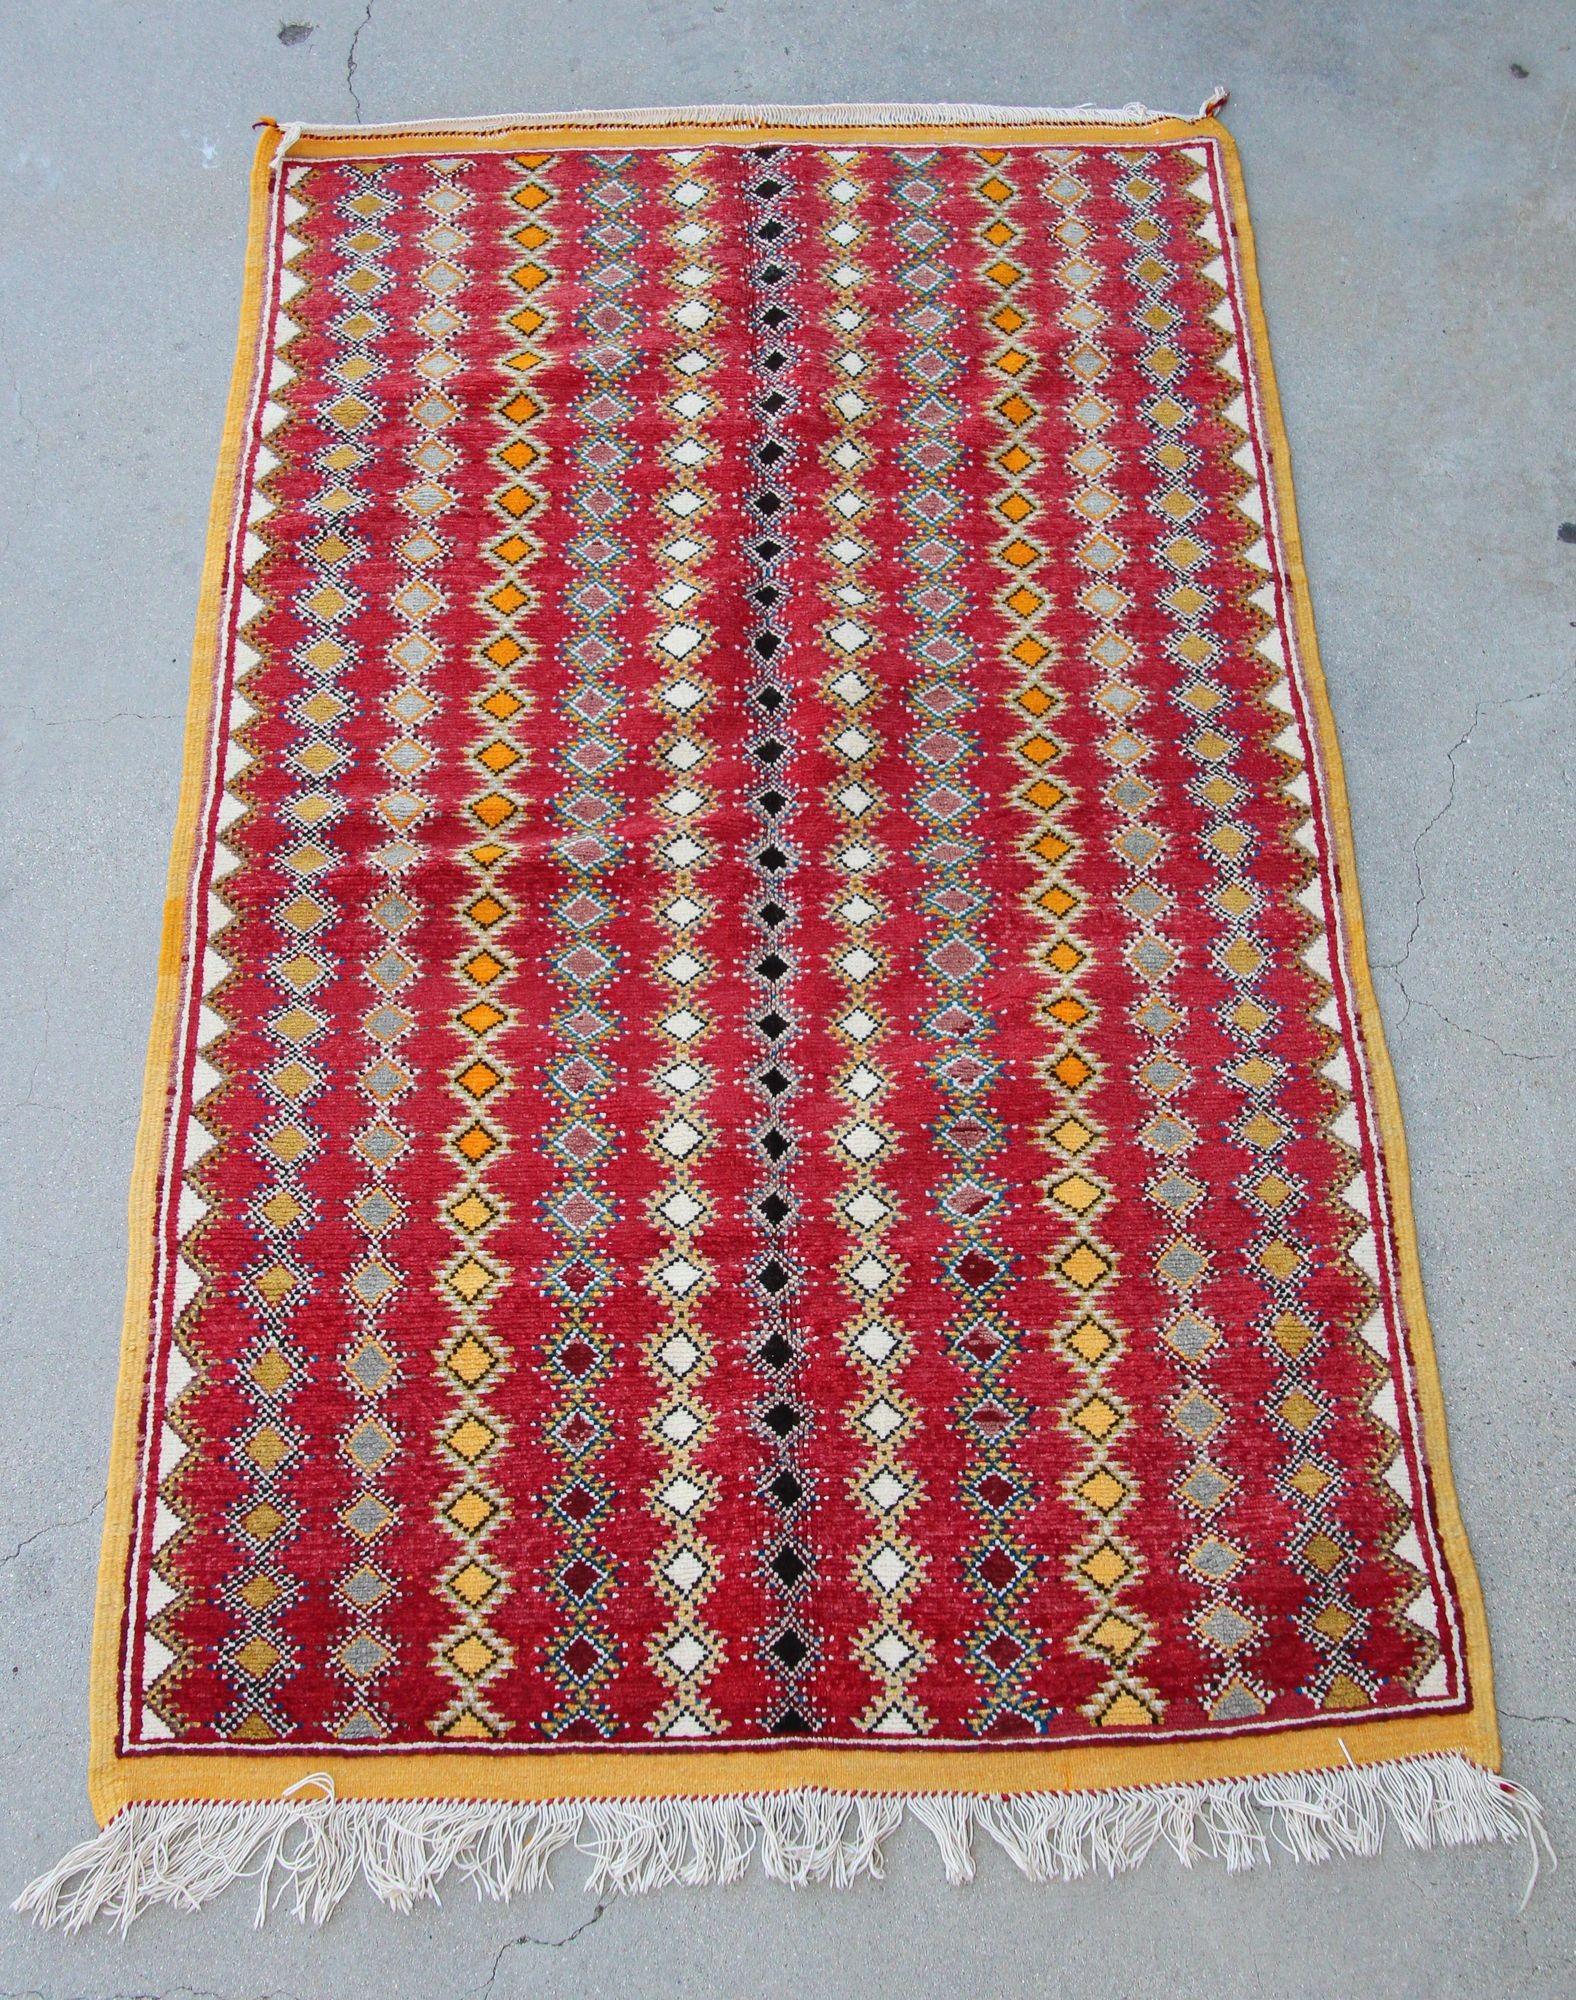 Authentique tapis tribal vintage marocain tissé à la main par des femmes berbères marocaines à l'aide de laine d'agneau biologique et de teinture biologique. Chemin de table tribal marocain d'Afrique du Nord à poils ras, tissé à la main par les